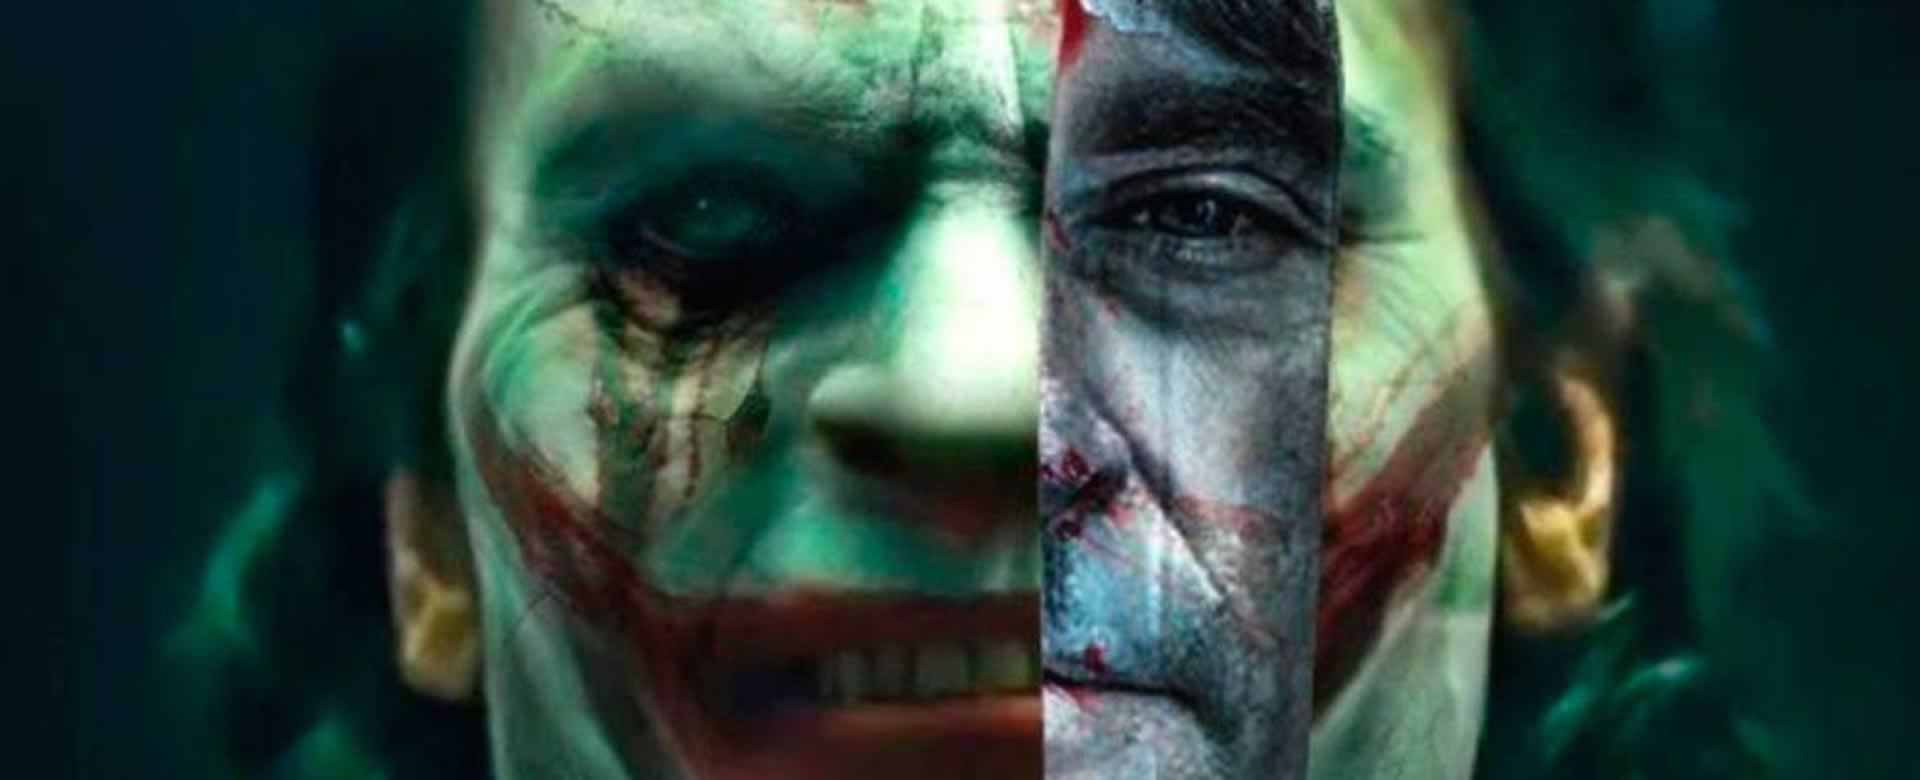 Filtran un video de la nueva película Joker en las redes sociales